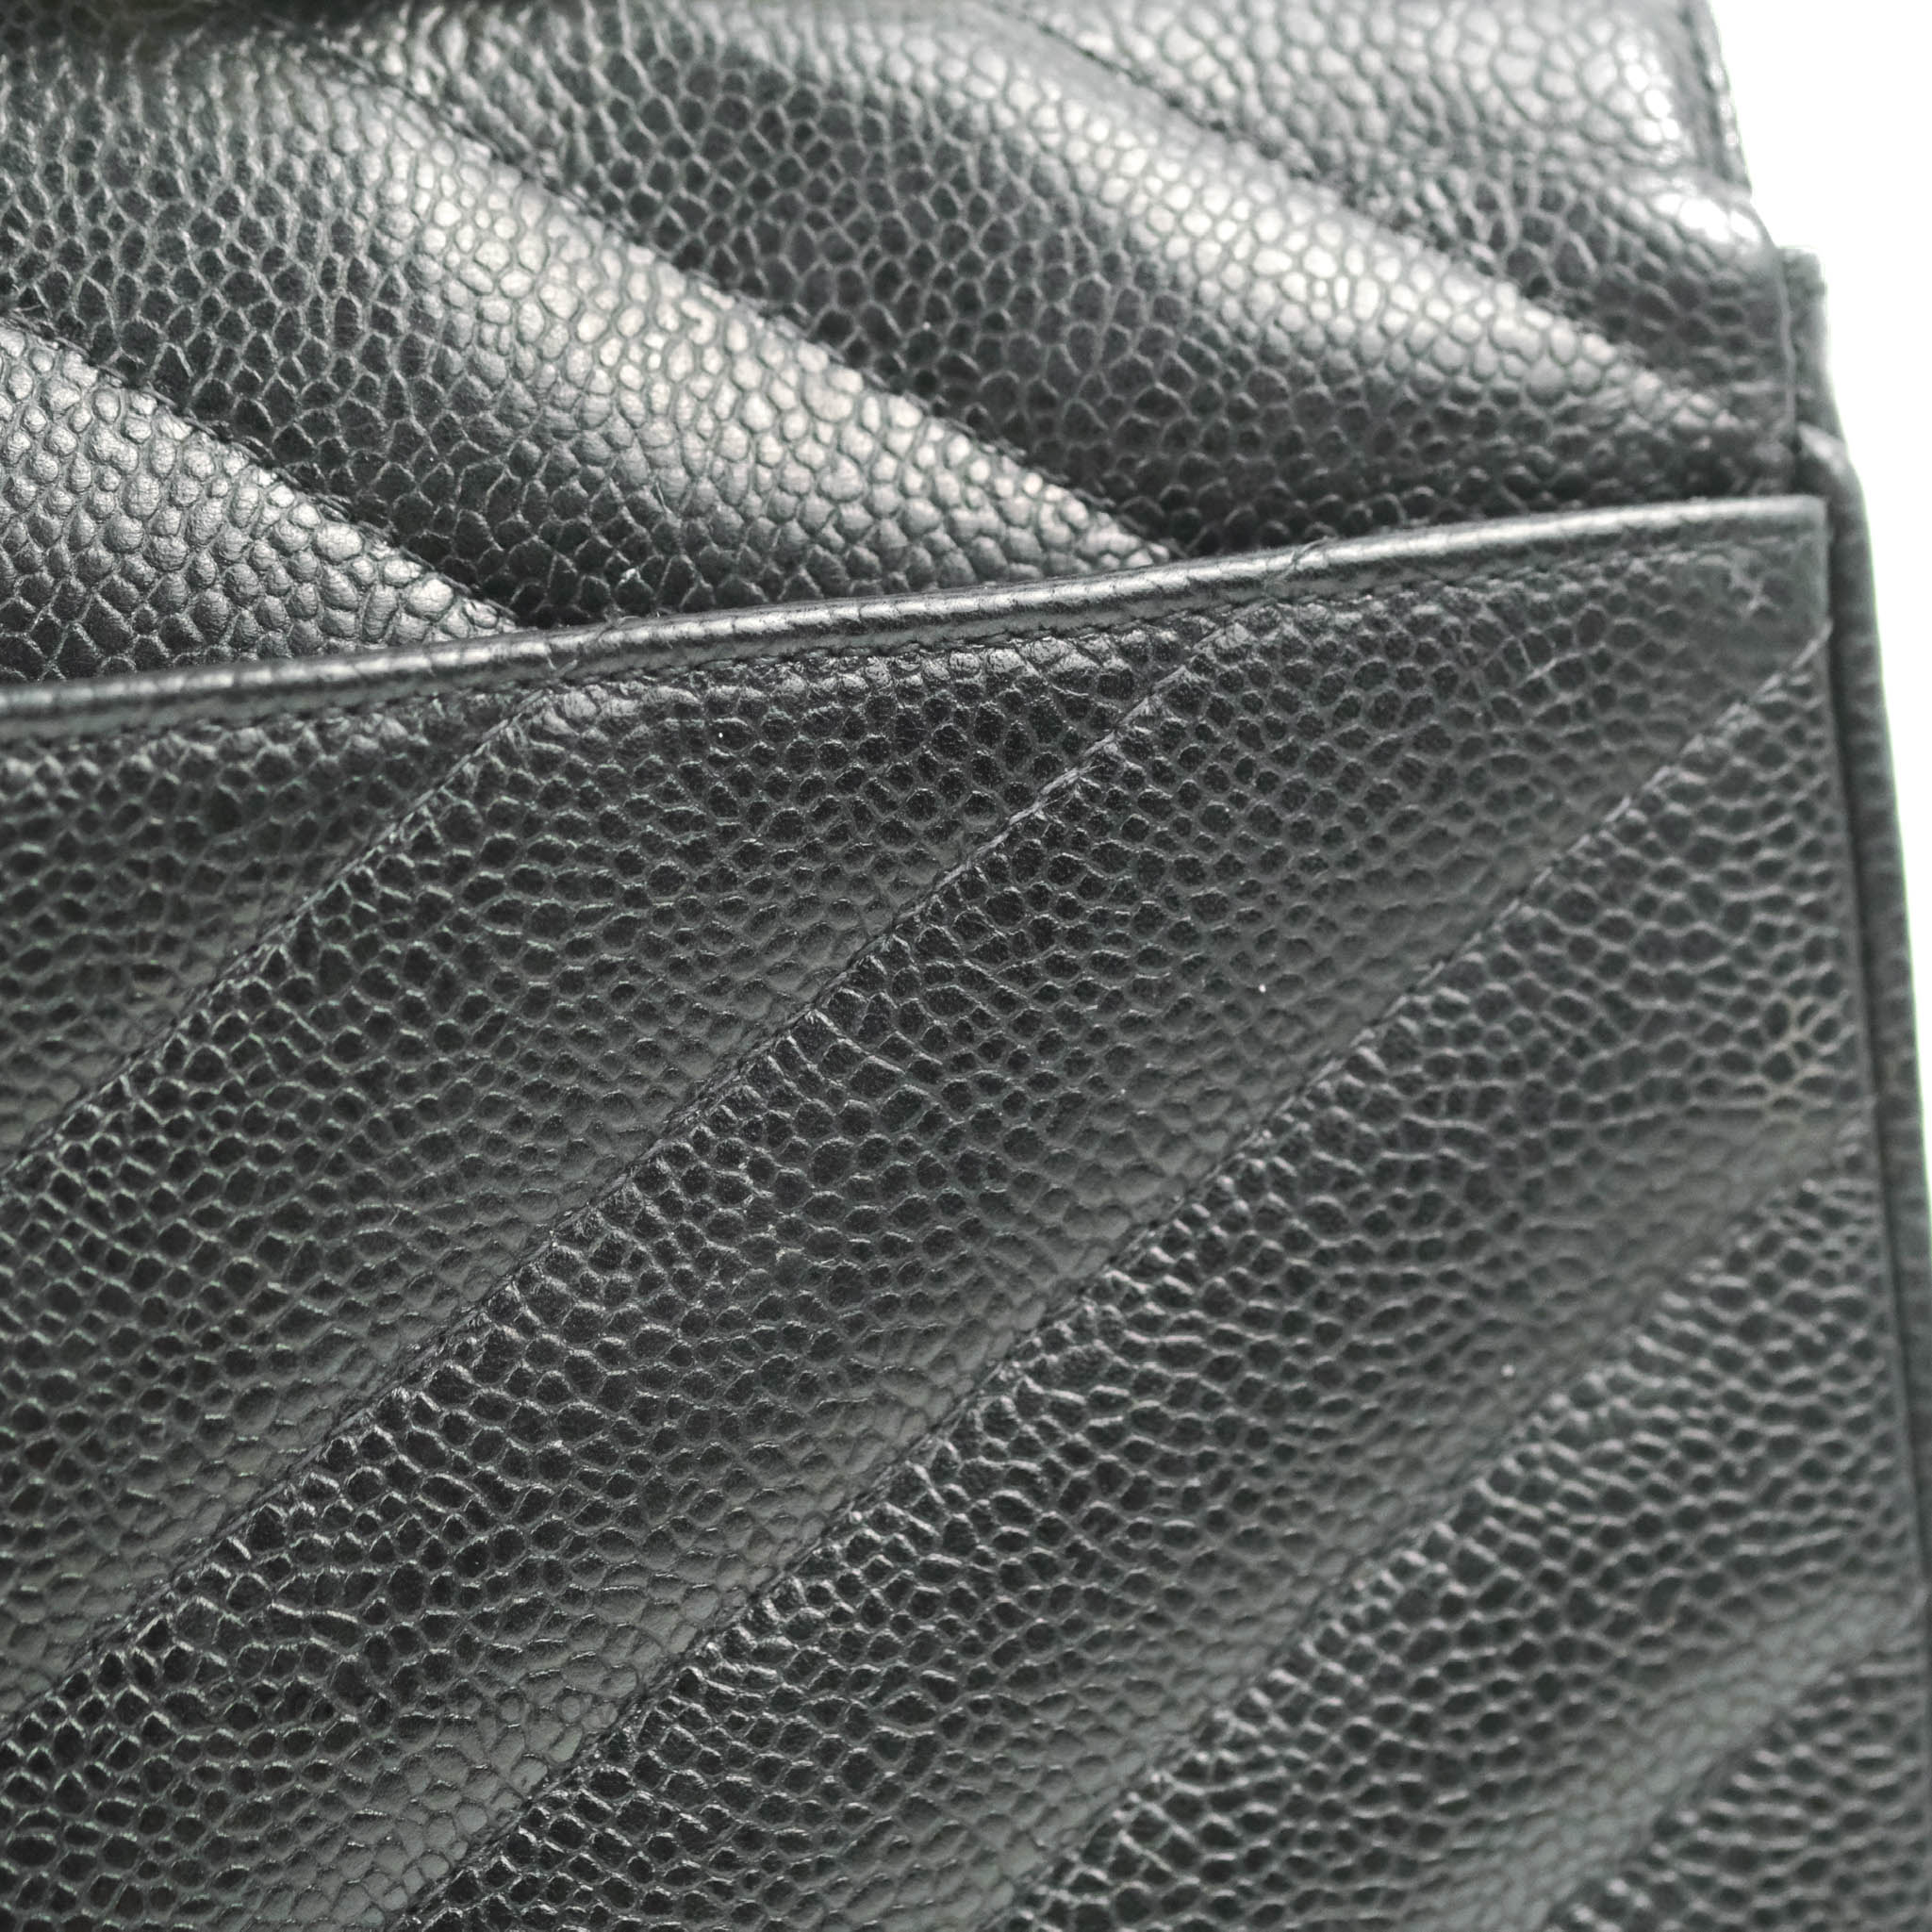 Vintage Chanel Classic Medium Double Flap Bag Black Chevron Leather 24 –  Break Archive